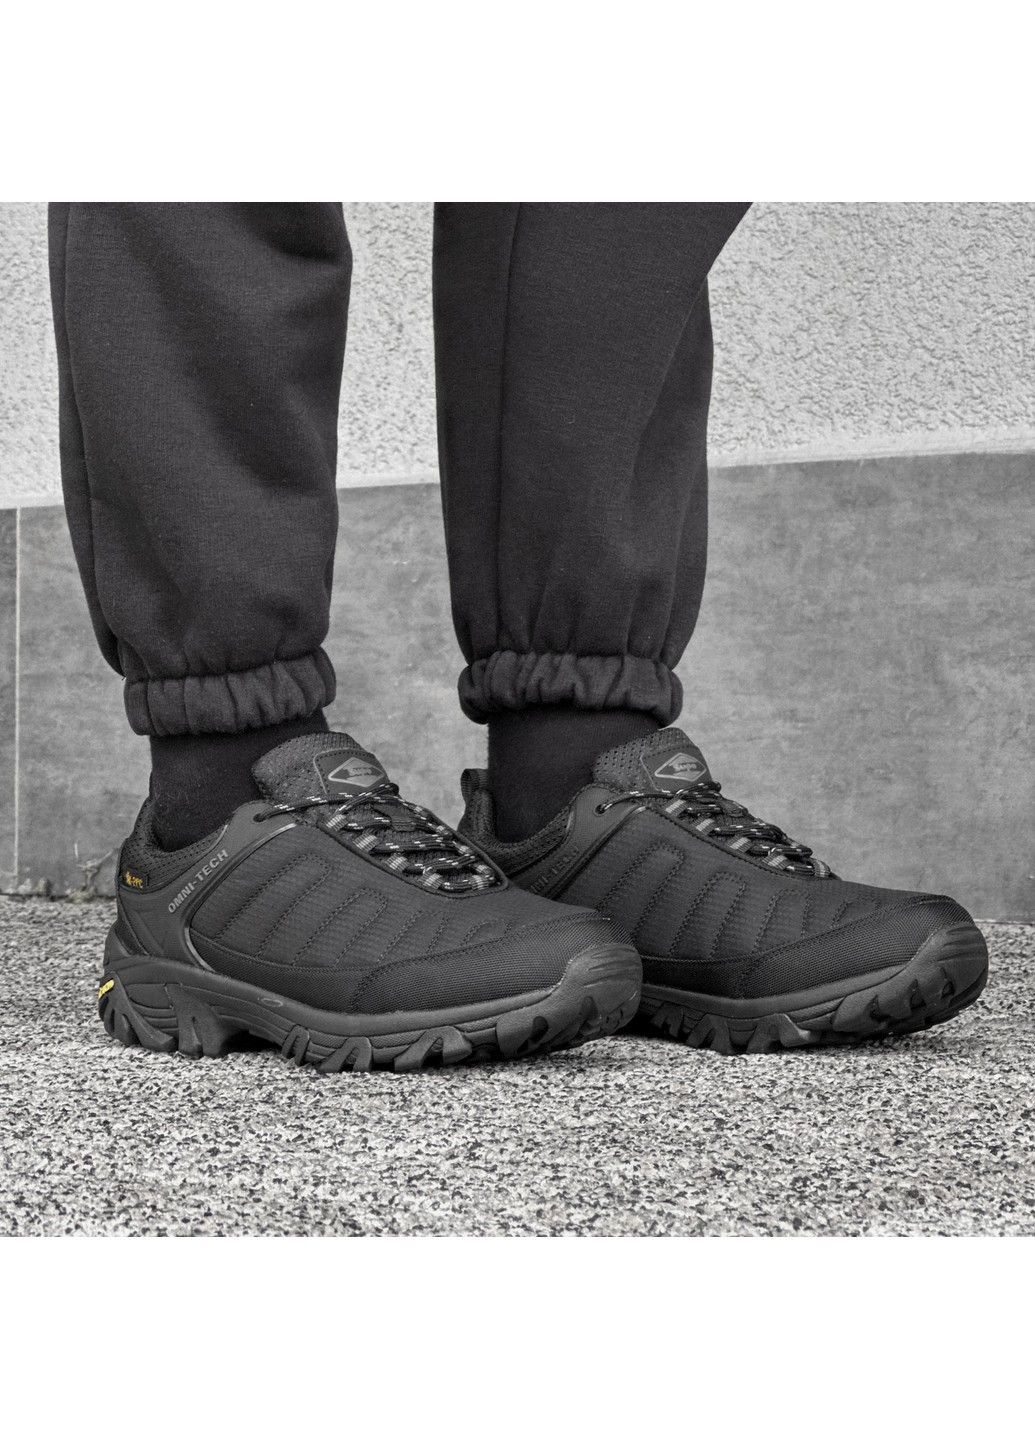 Черные осенние мужские кроссовки термо Supo